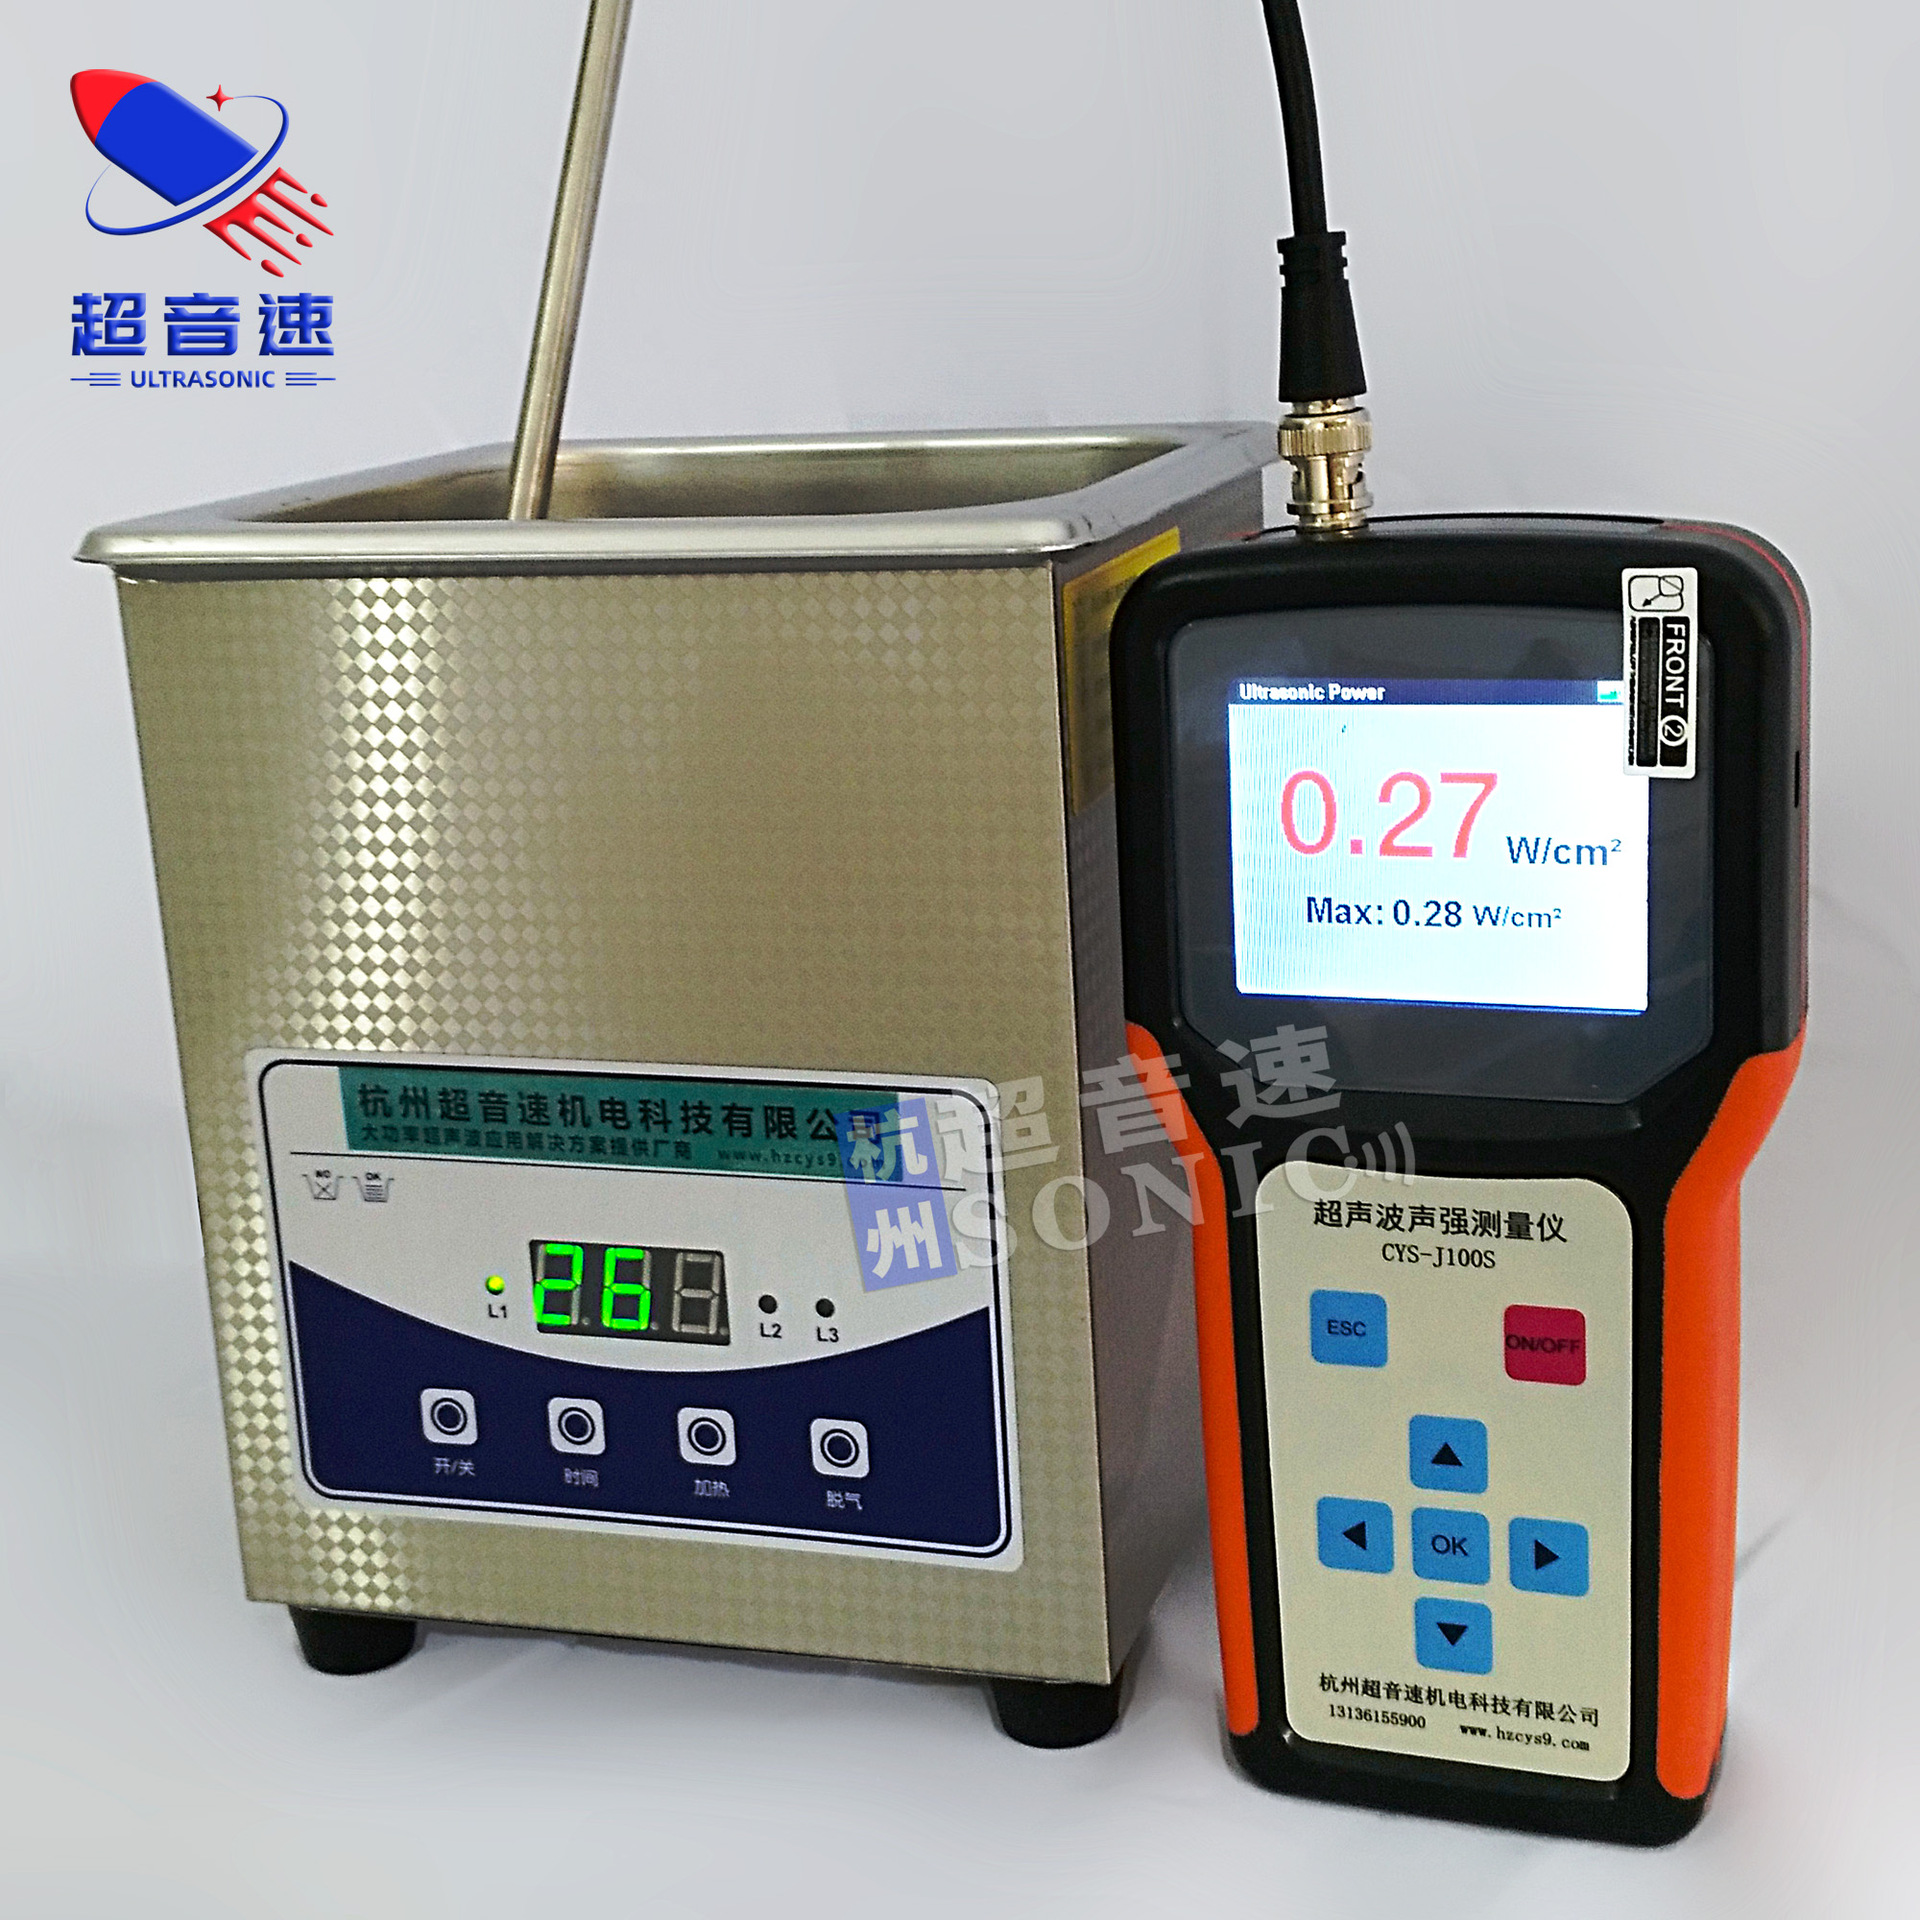 上海超声波声强功率测量仪图片; 超声波声强测量仪企业列表